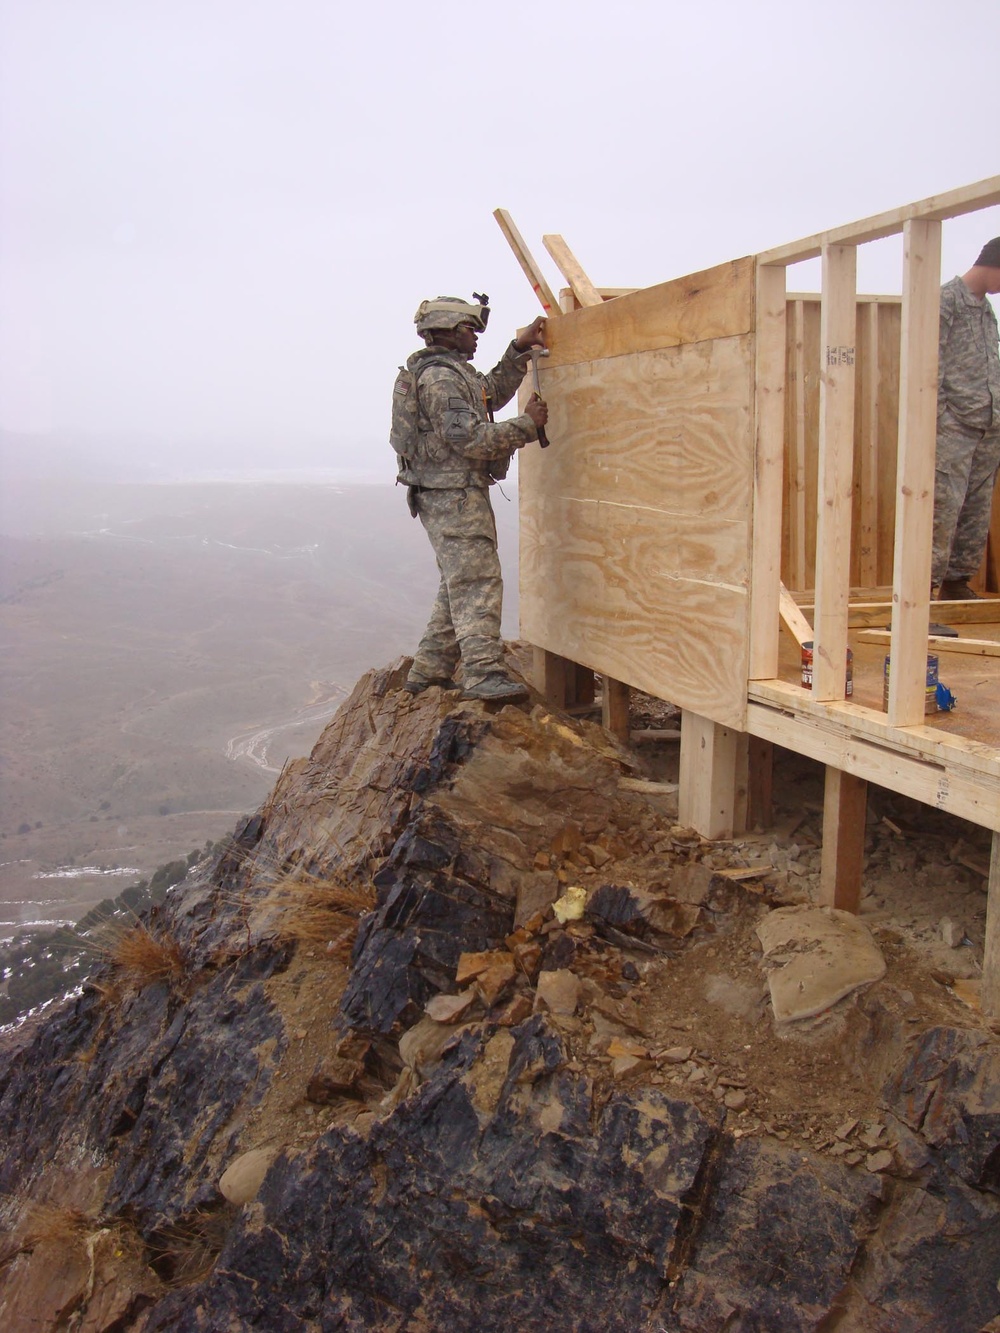 Soldier helps construct bunker